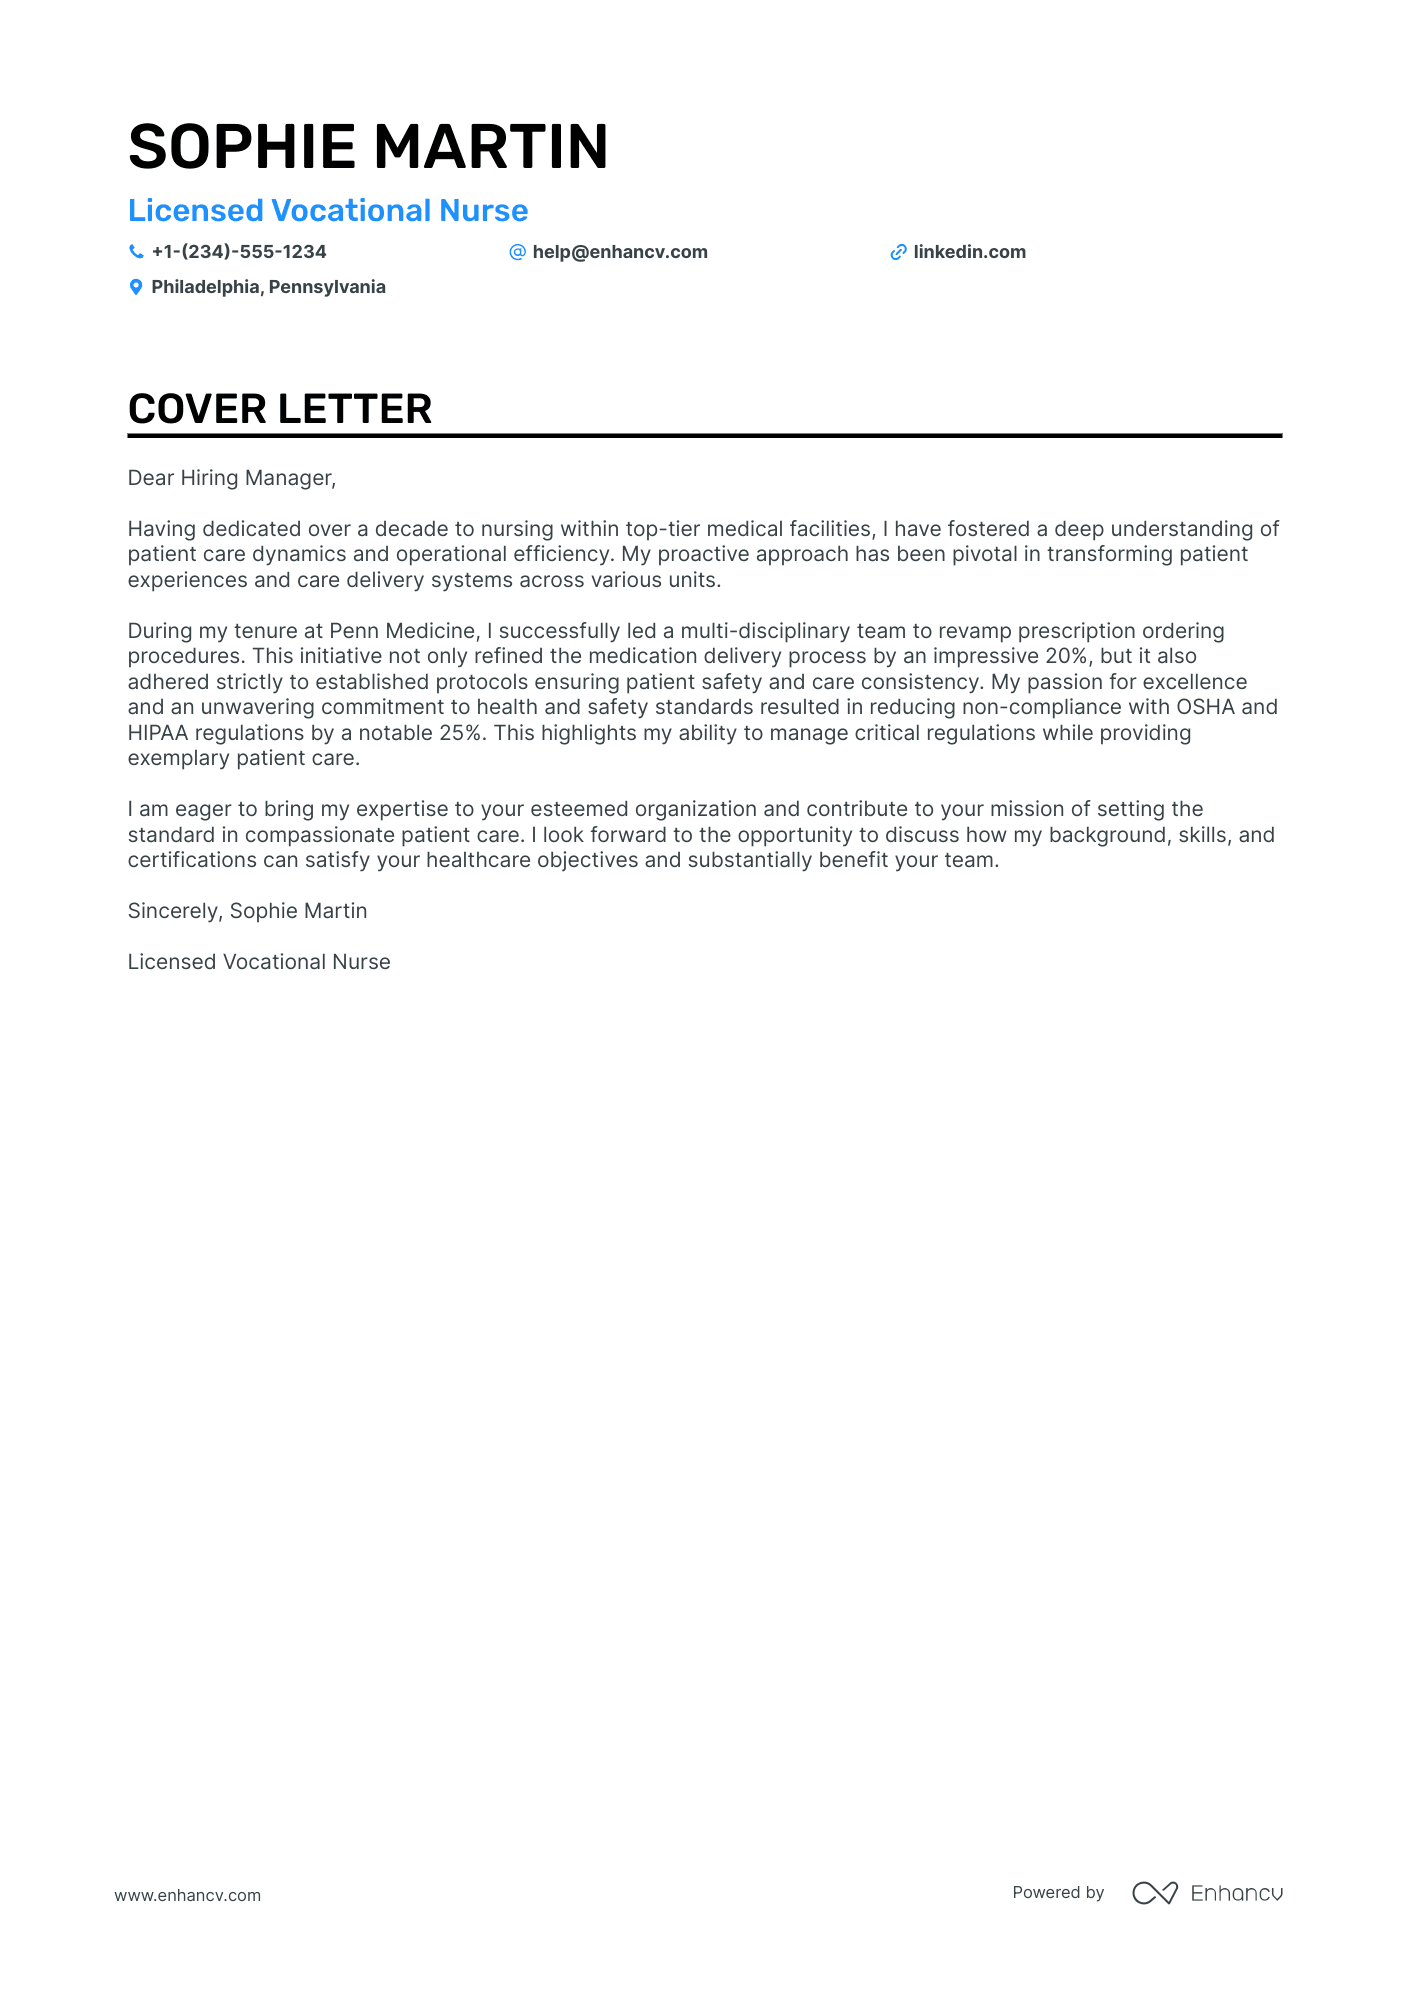 LVN cover letter